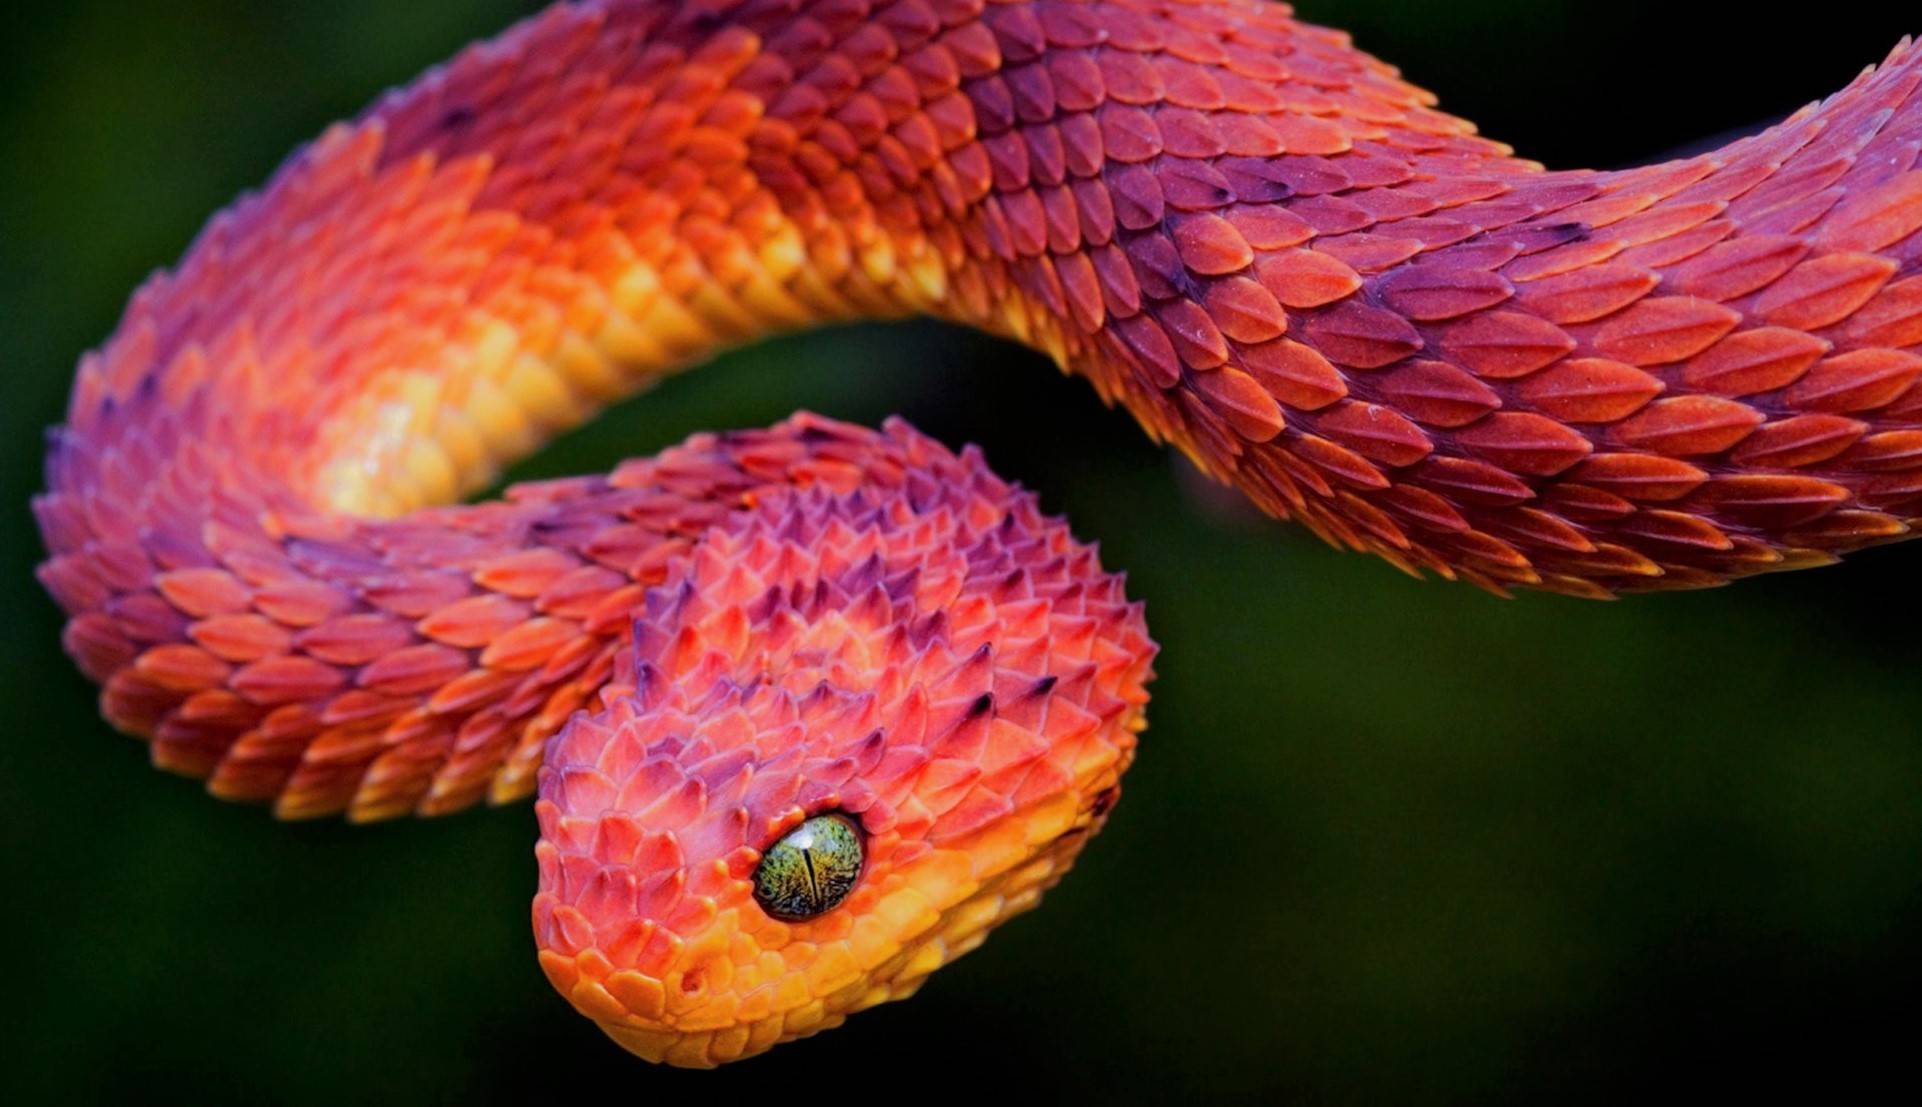 Топ 10: самые ядовитые и опасные змеи в мире - фото, названия и характеристика